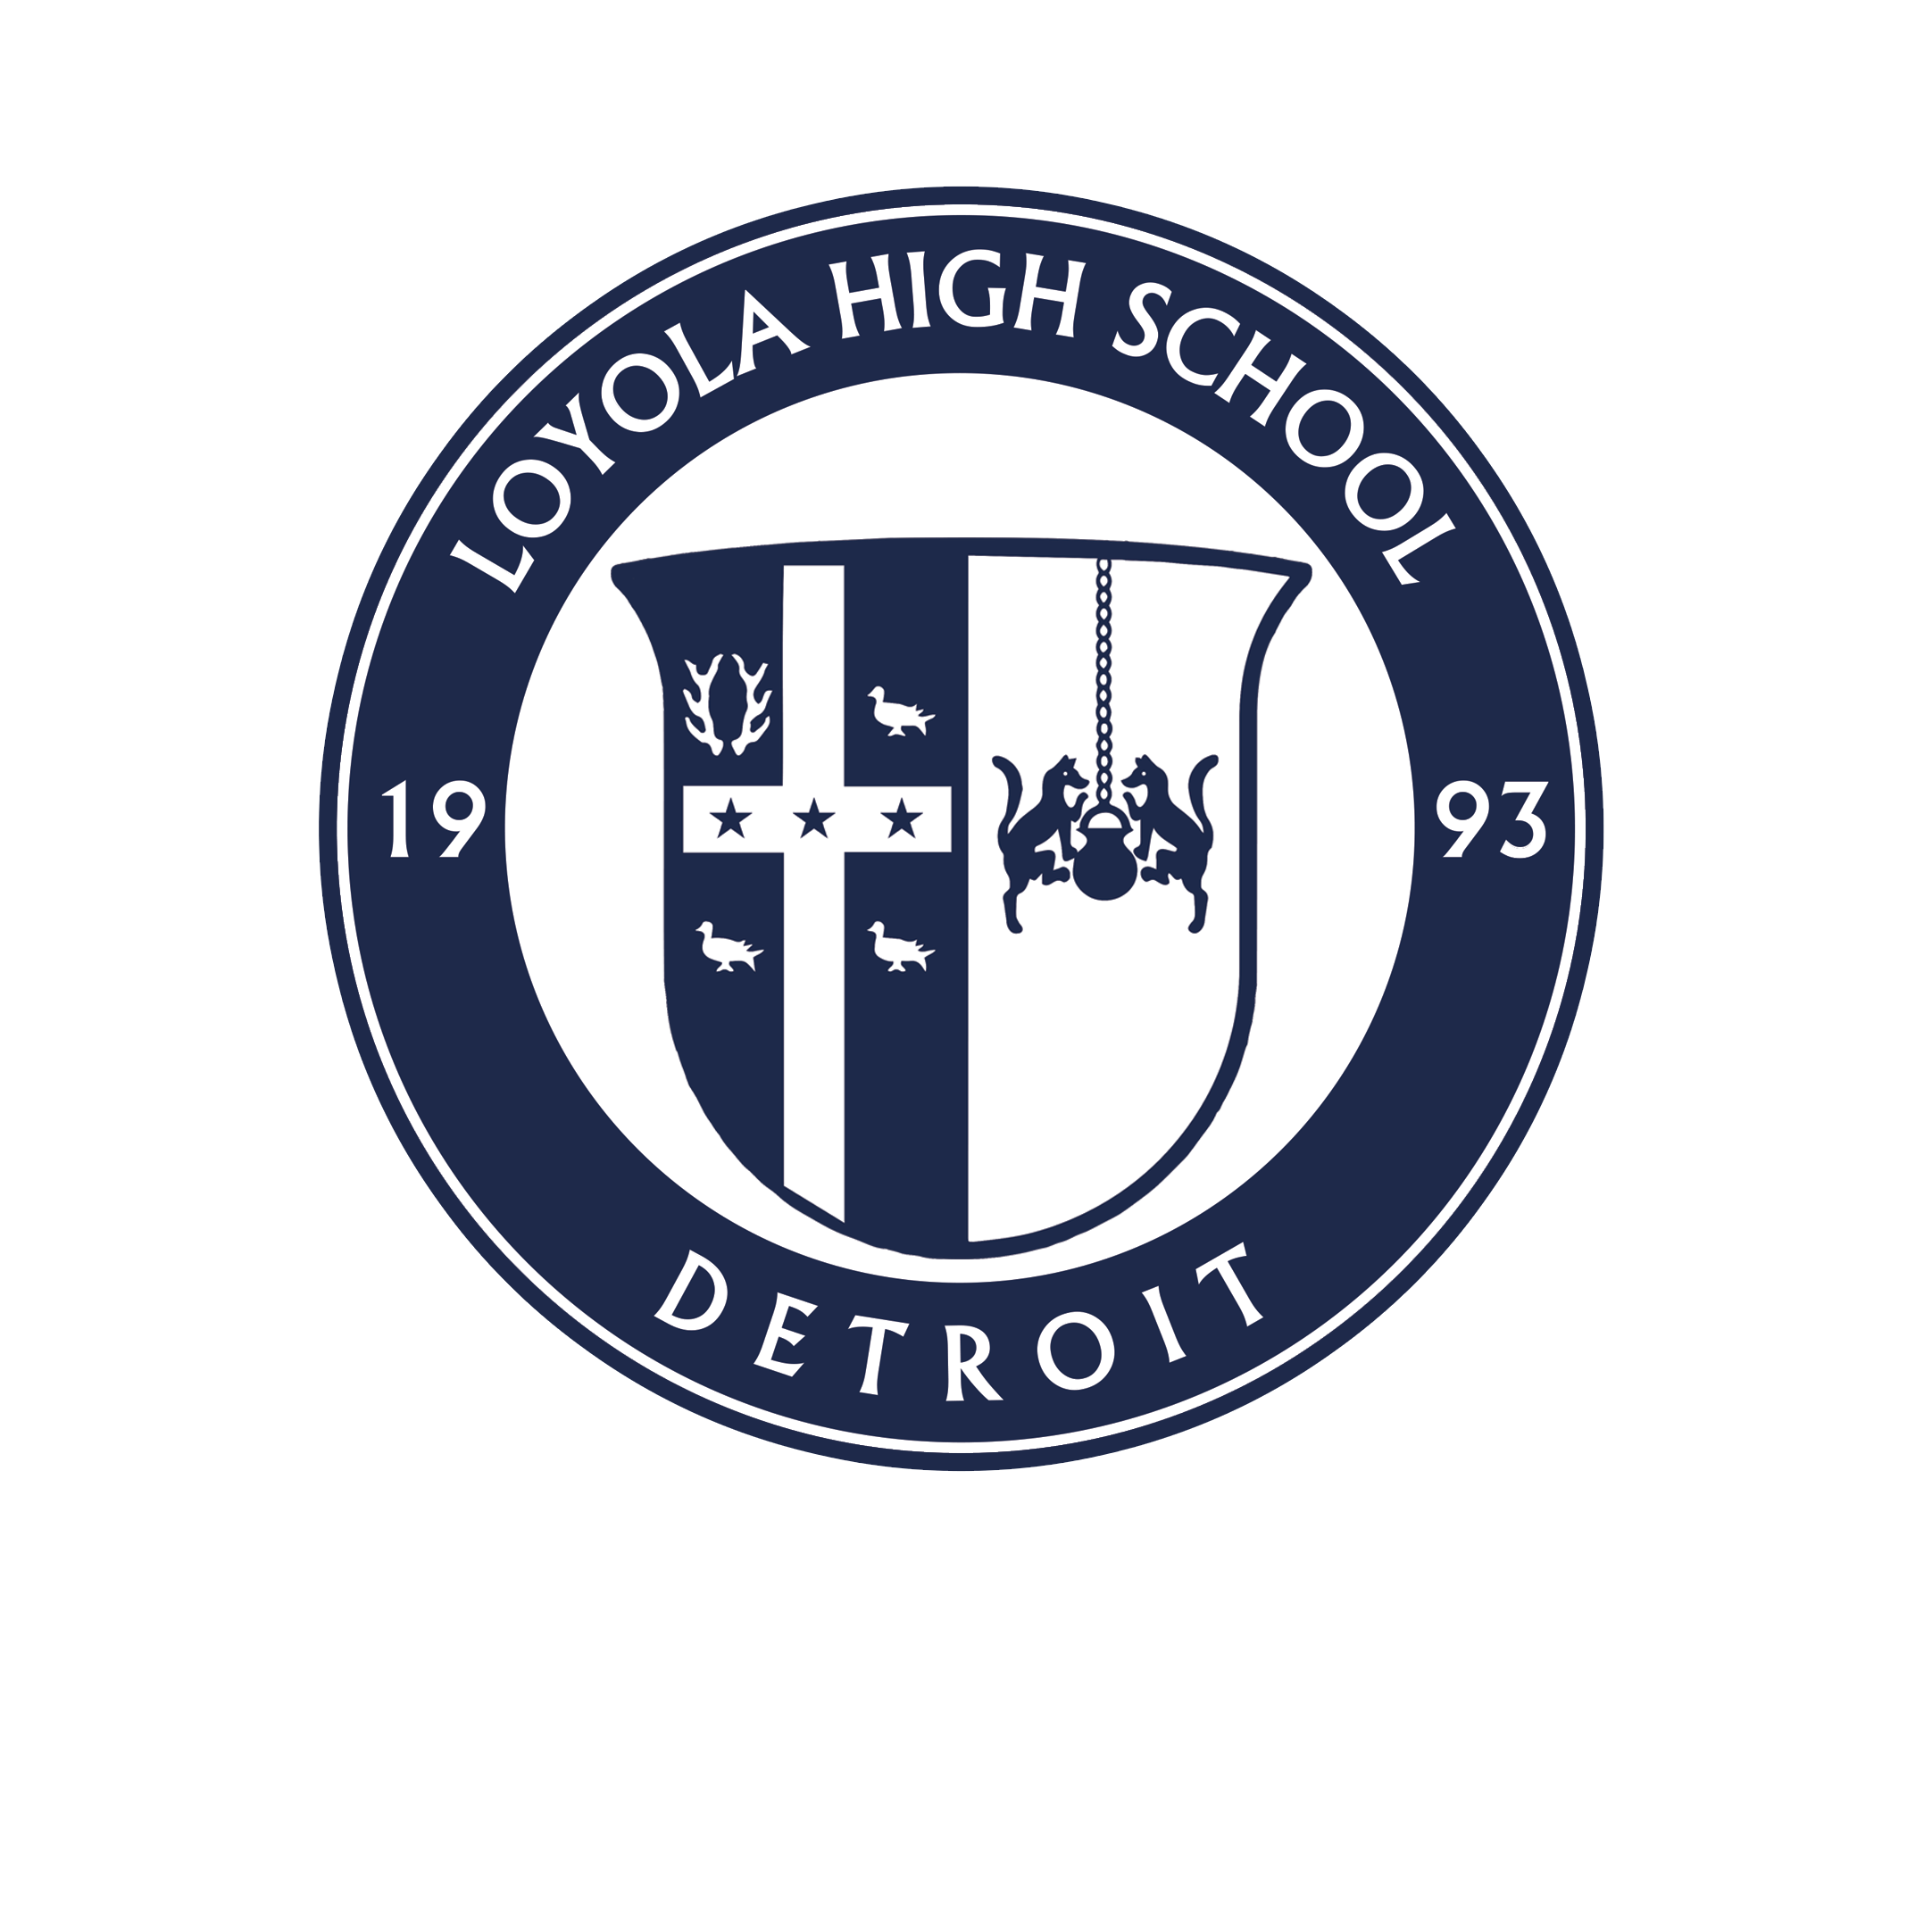 Loyola High School